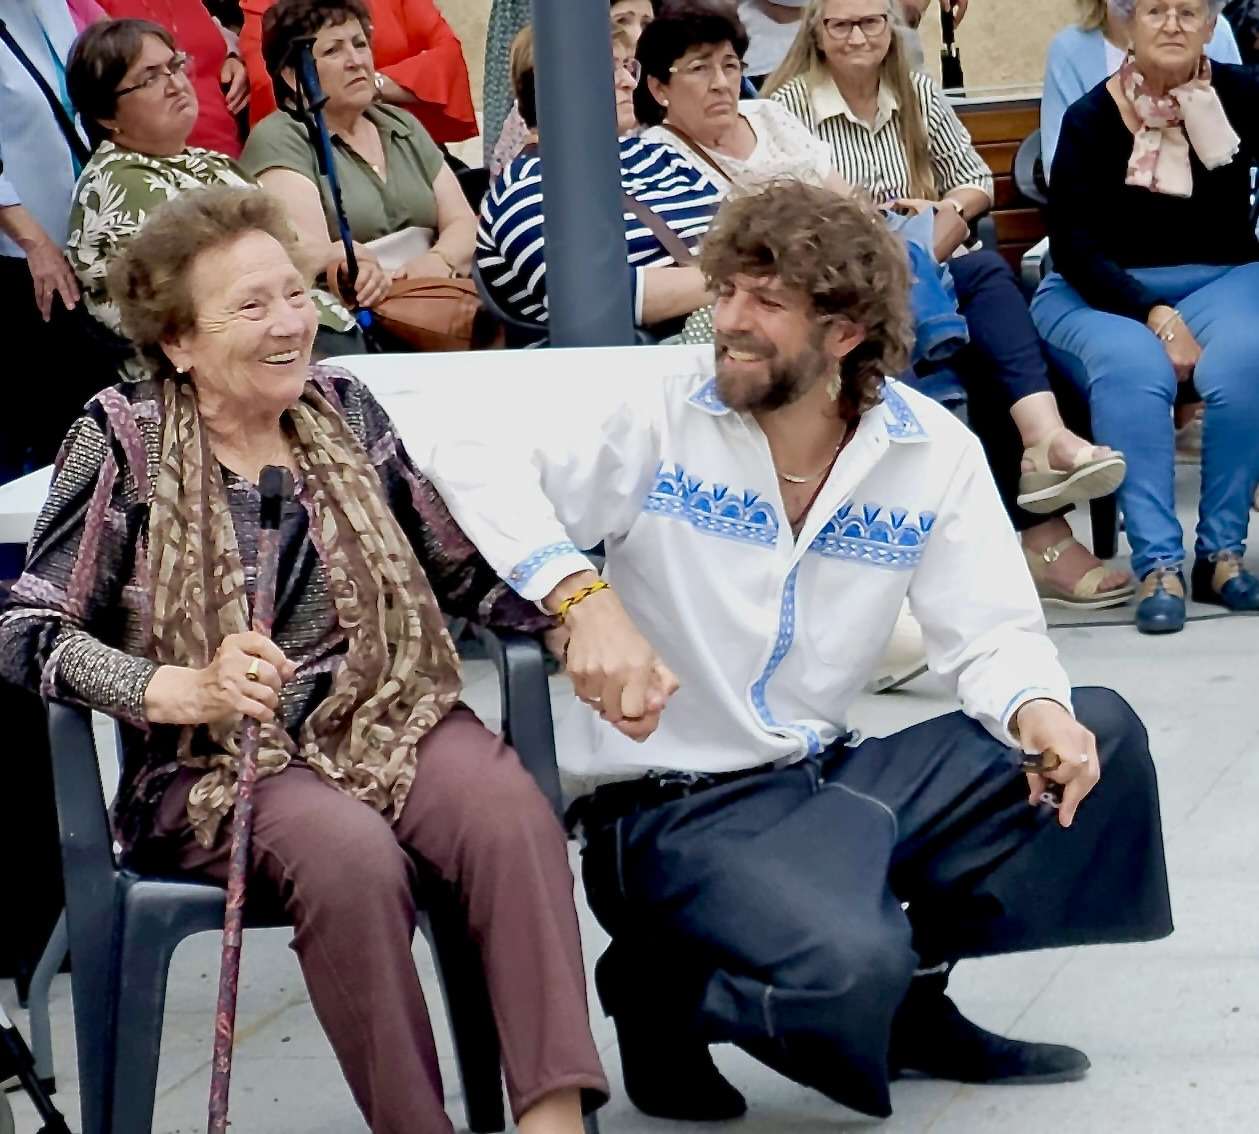 El actor Santi Senso inaugura en Casar de Cáceres su escultura 'Oliva y Olivo, un abrazo ancestral'